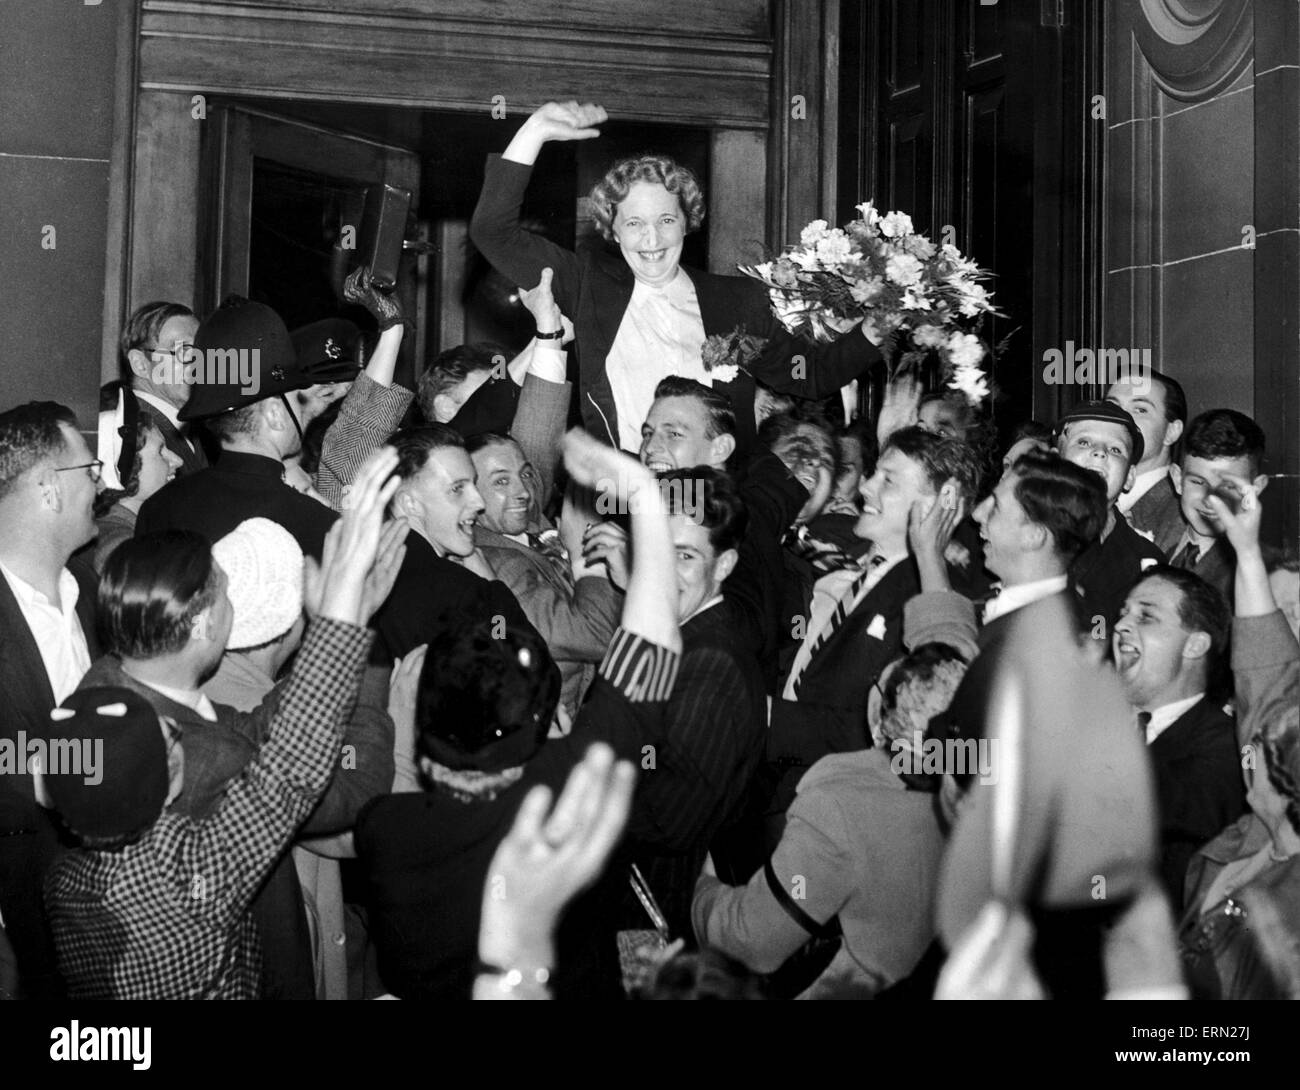 Edith Pitt, conservatori mp per Edgbaston è allietata da sostenitori dopo i risultati sono annunciate, Birmingham, 3 luglio 1953. Foto Stock